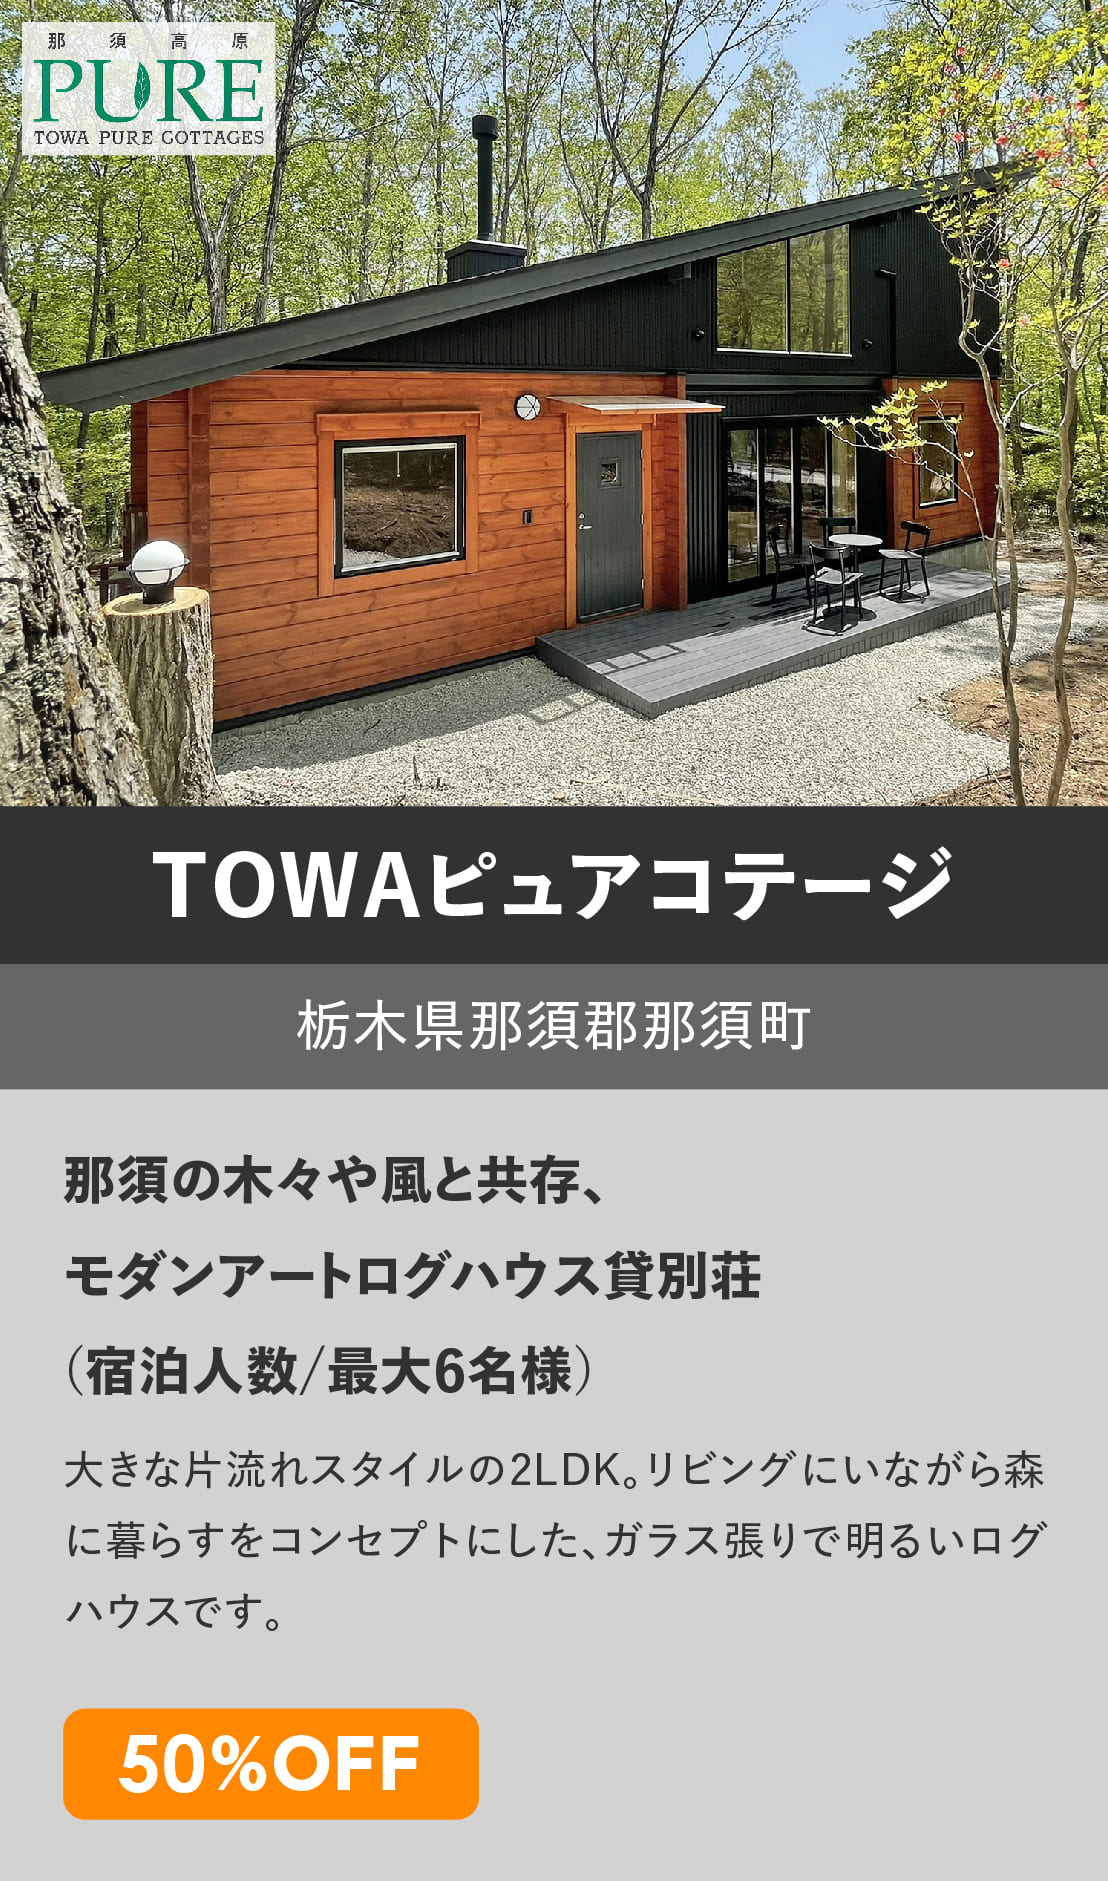 ログハウスのビックボックス,貸別荘,体験宿泊,TOWA,藤和那須リゾート